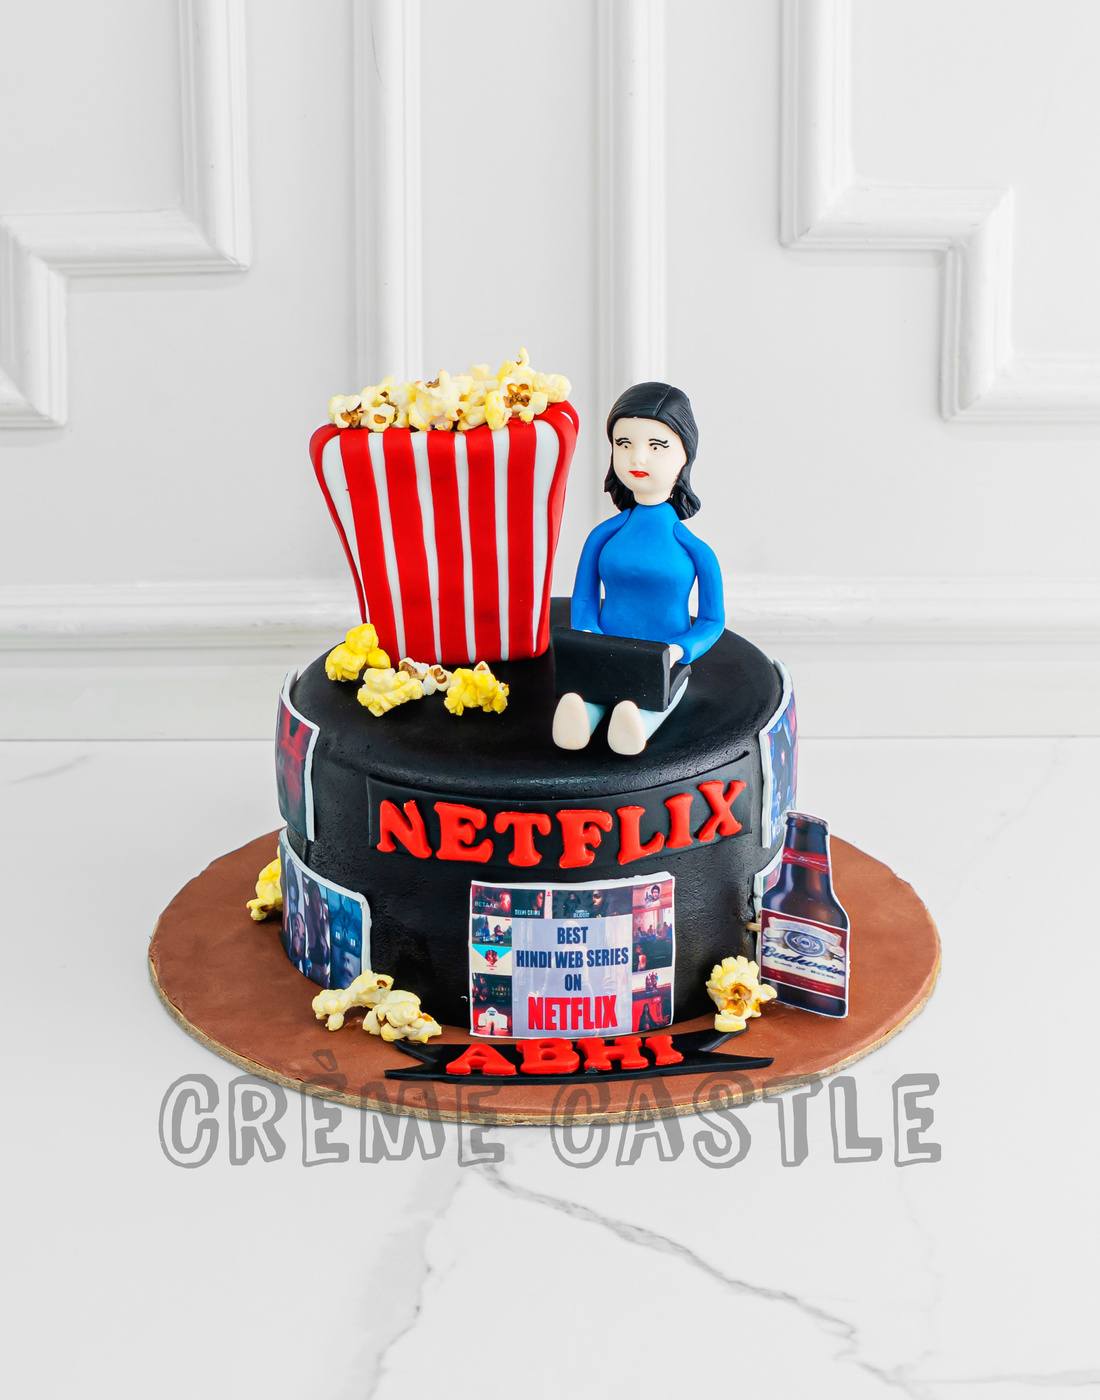 Buy Netflix Lover Fondant Cake Online in Delhi NCR : Fondant Cake Studio